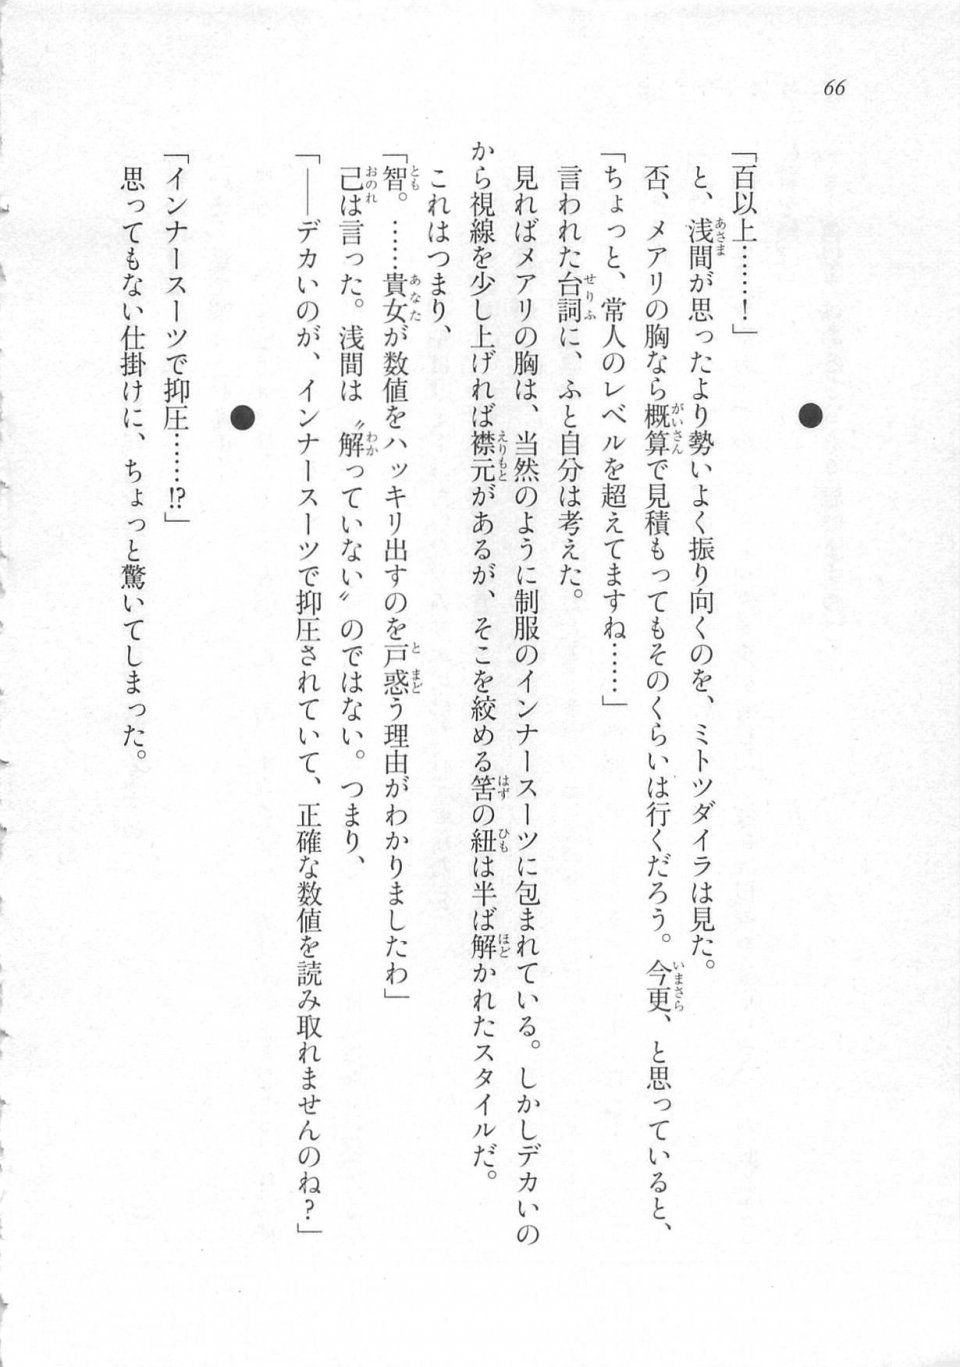 Kyoukai Senjou no Horizon LN Sidestory Vol 3 - Photo #70